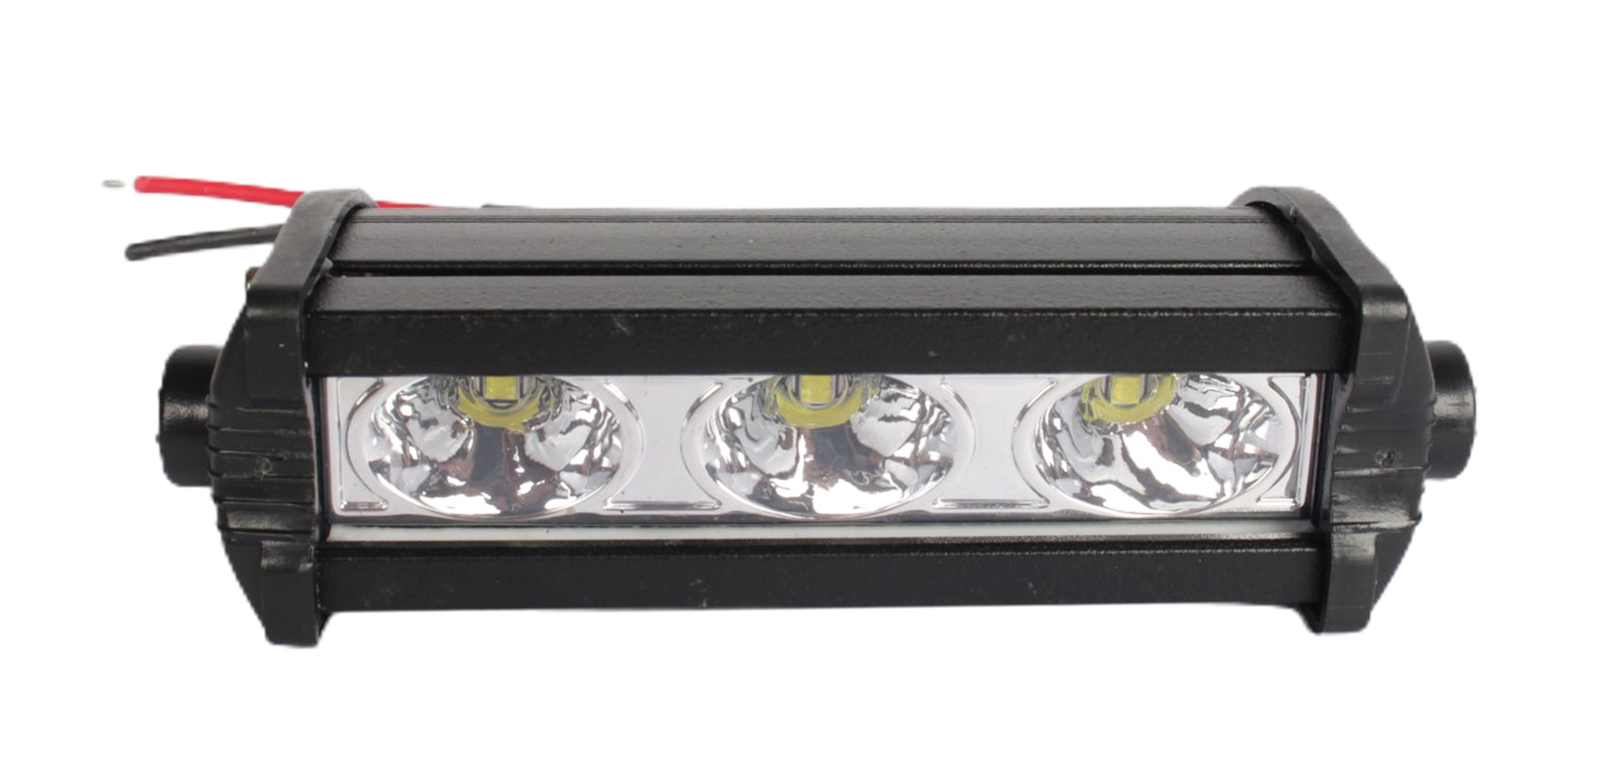 Фара рабочего света MISTAR 3 LED 10-30V 90х25 мм MIS- E9W диодная 1шт. фотография №1